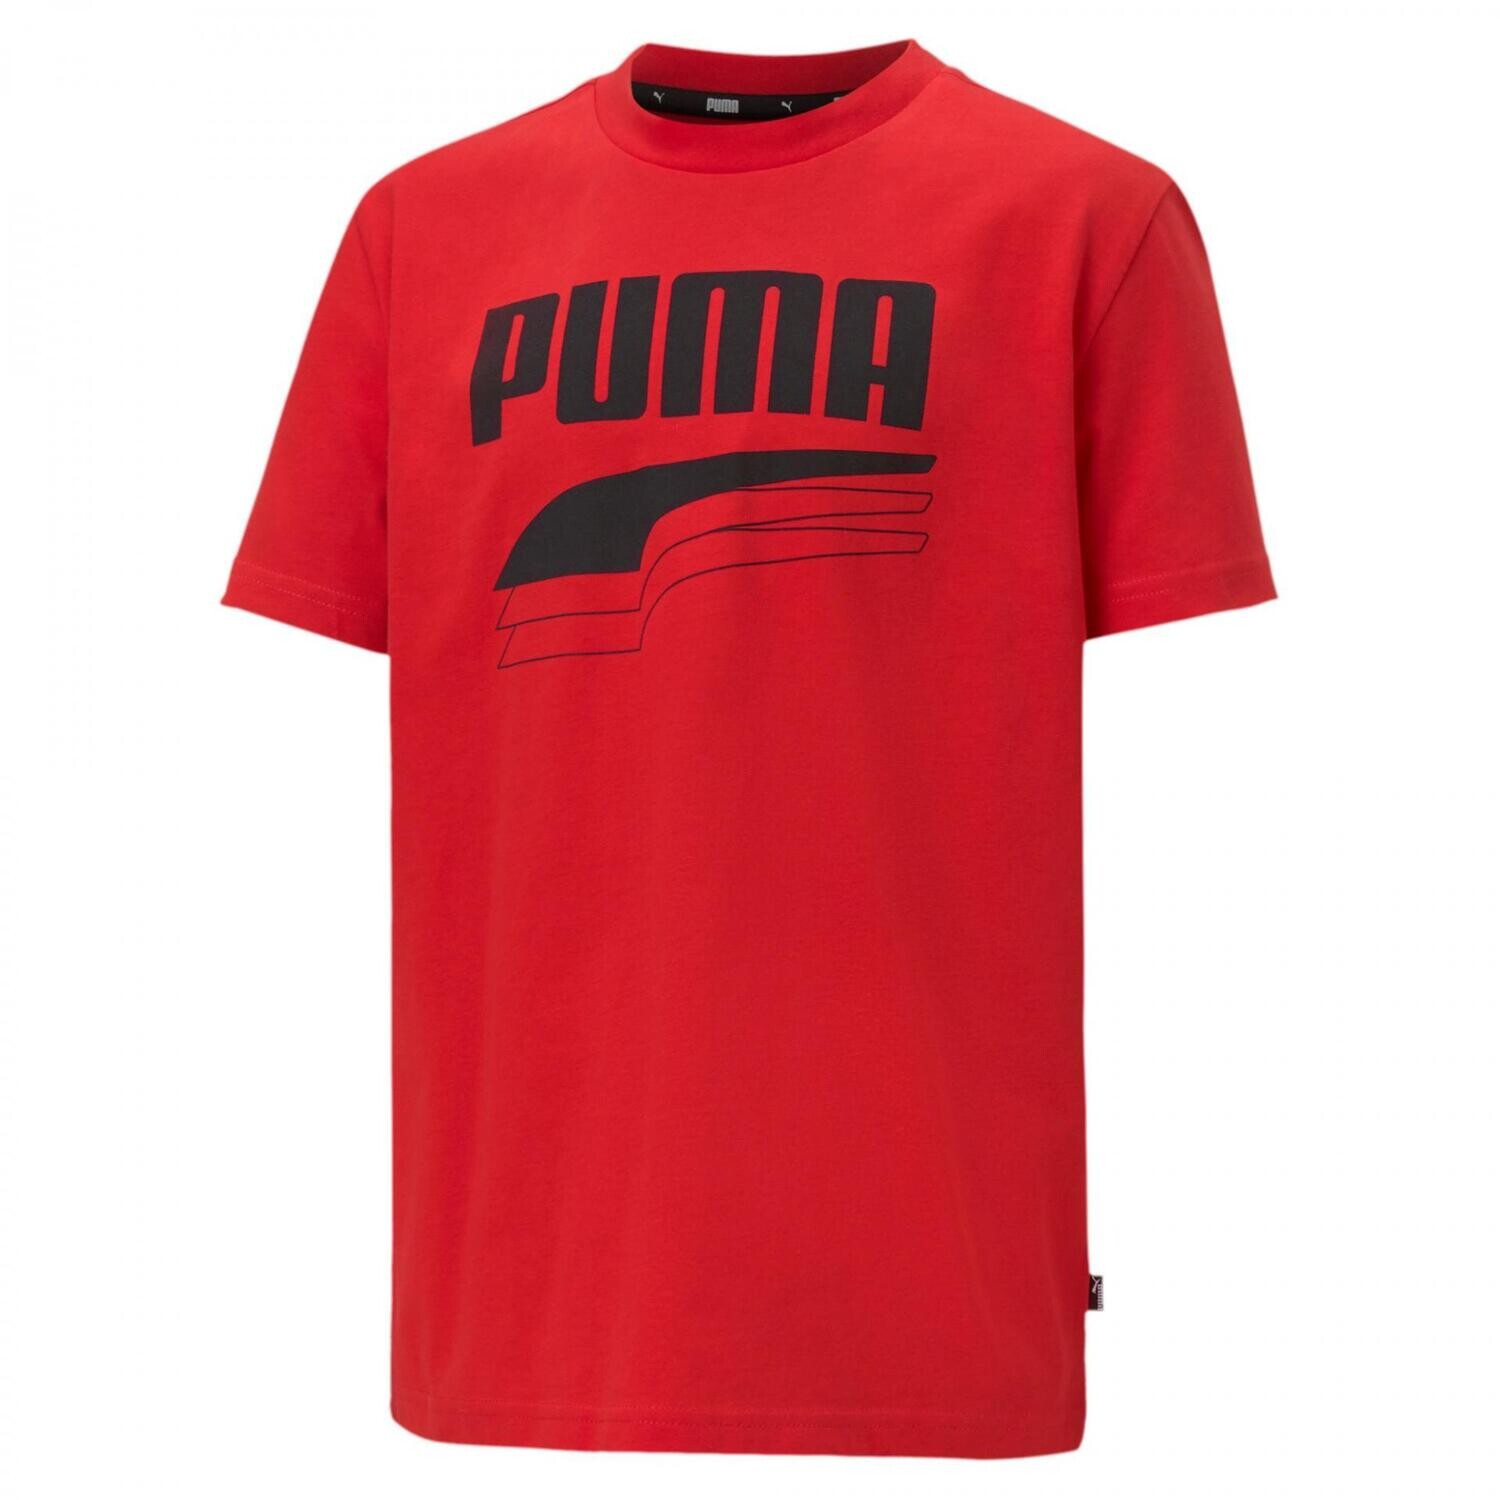 Puma T-shirt Rossa ragazzi ART. 581530 011